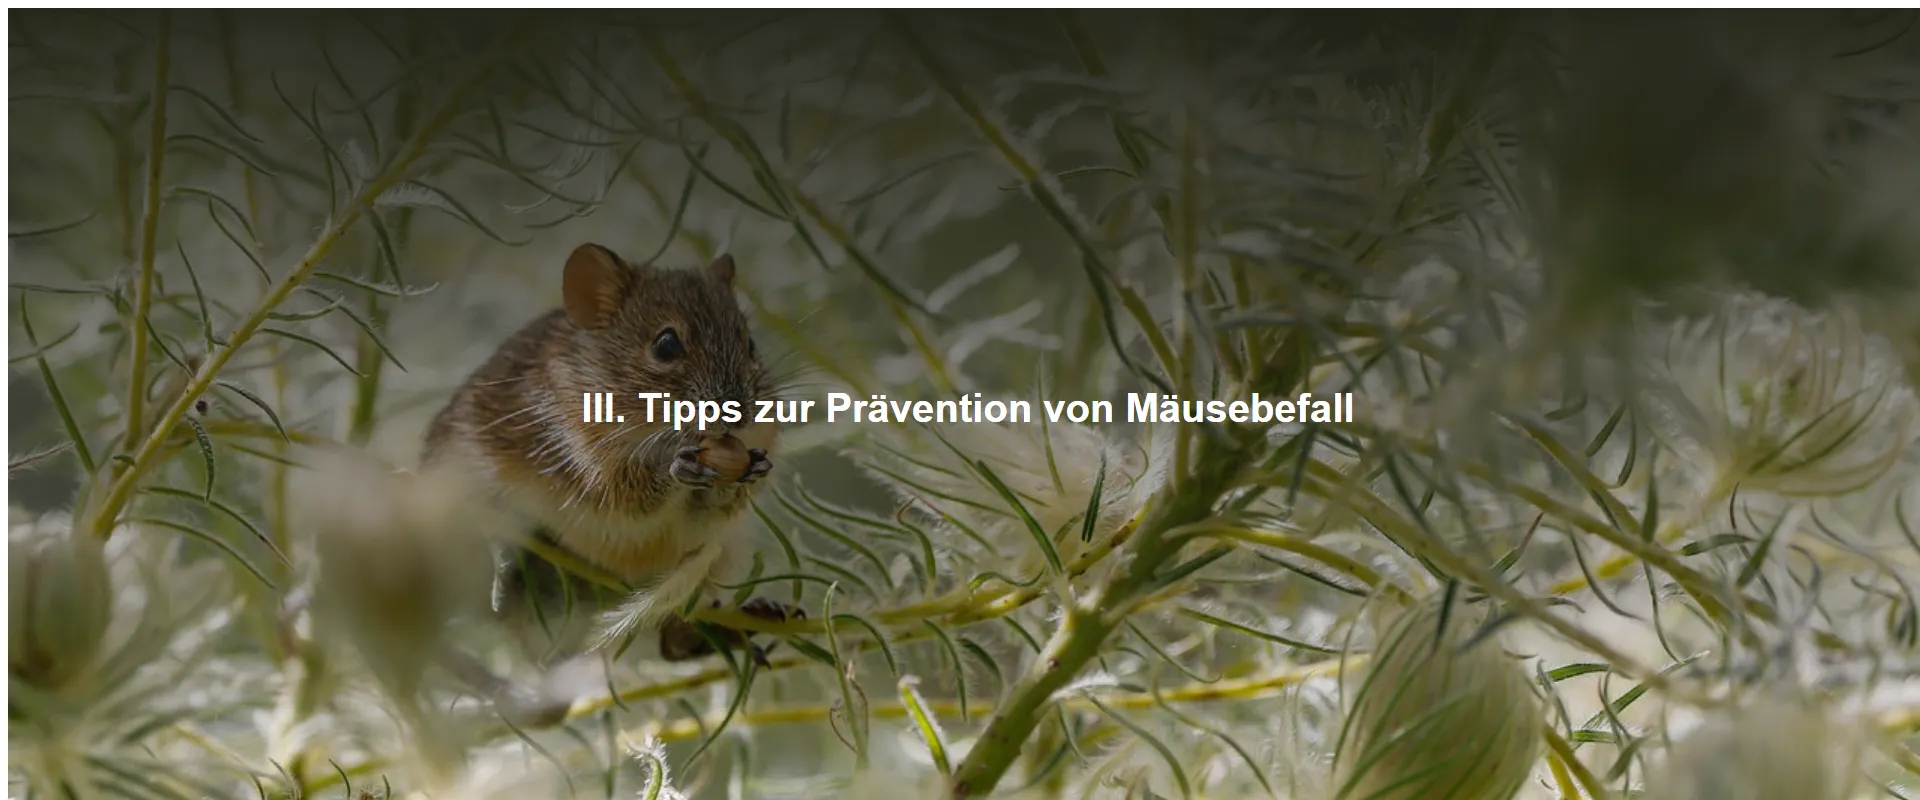 Tipps zur Prävention von Mäusebefall